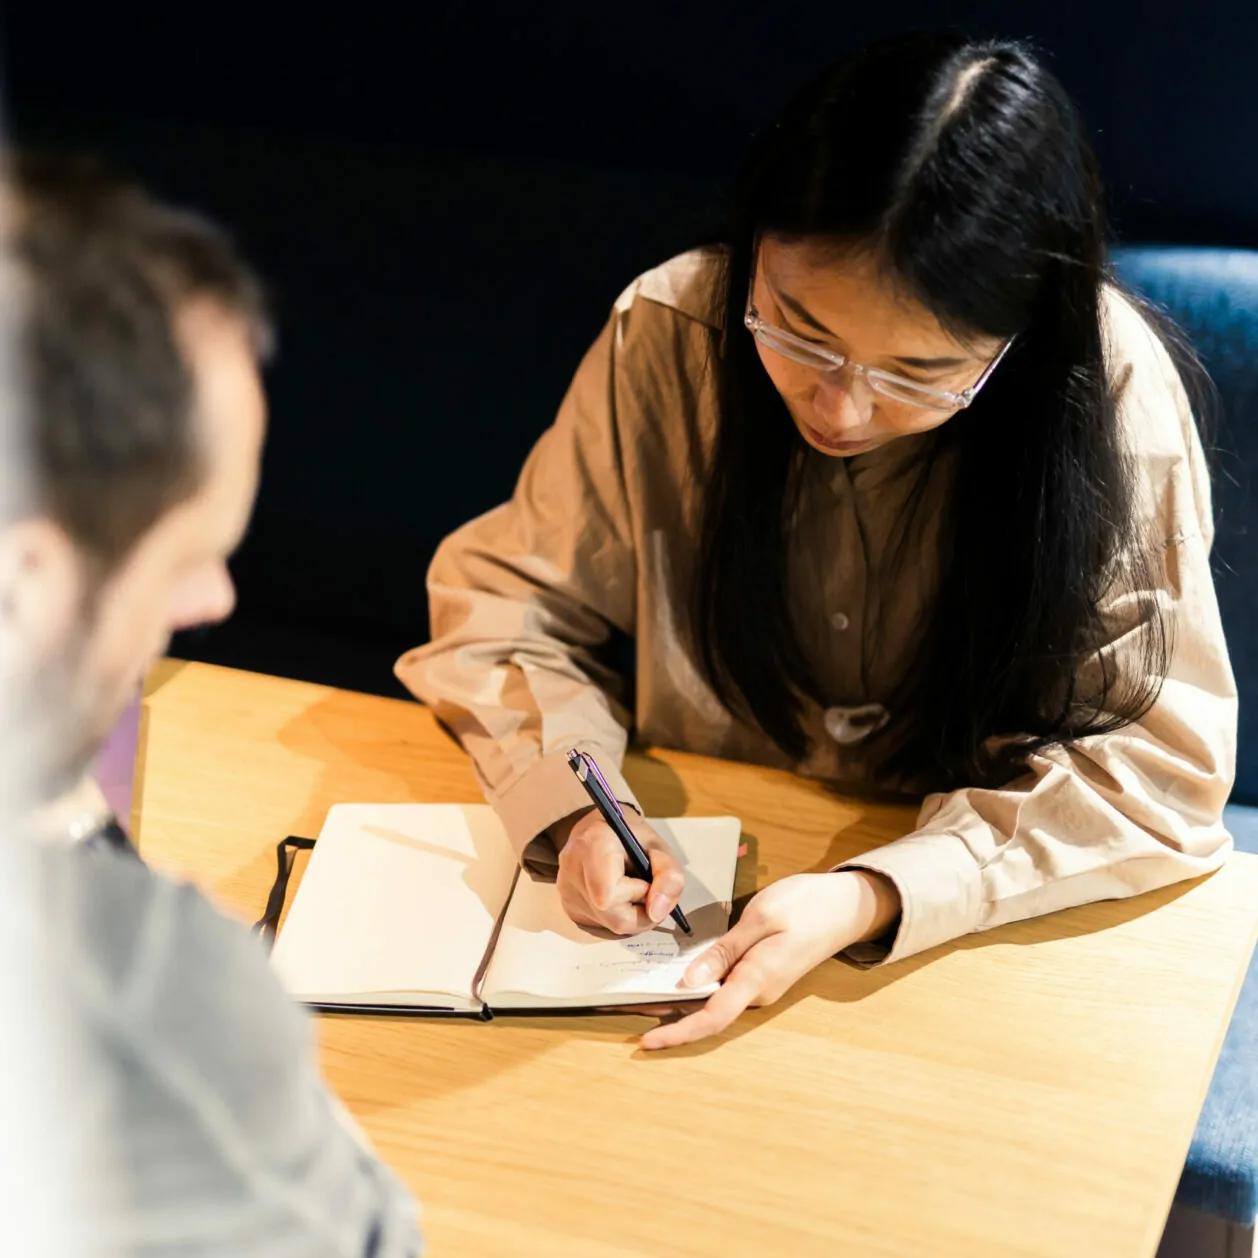 Aufnahme von schräg oben, das eine junge Frau zeigt, die sich in einem Buch Notizen zur Customer Journey eines Kunden macht – valantic CX.